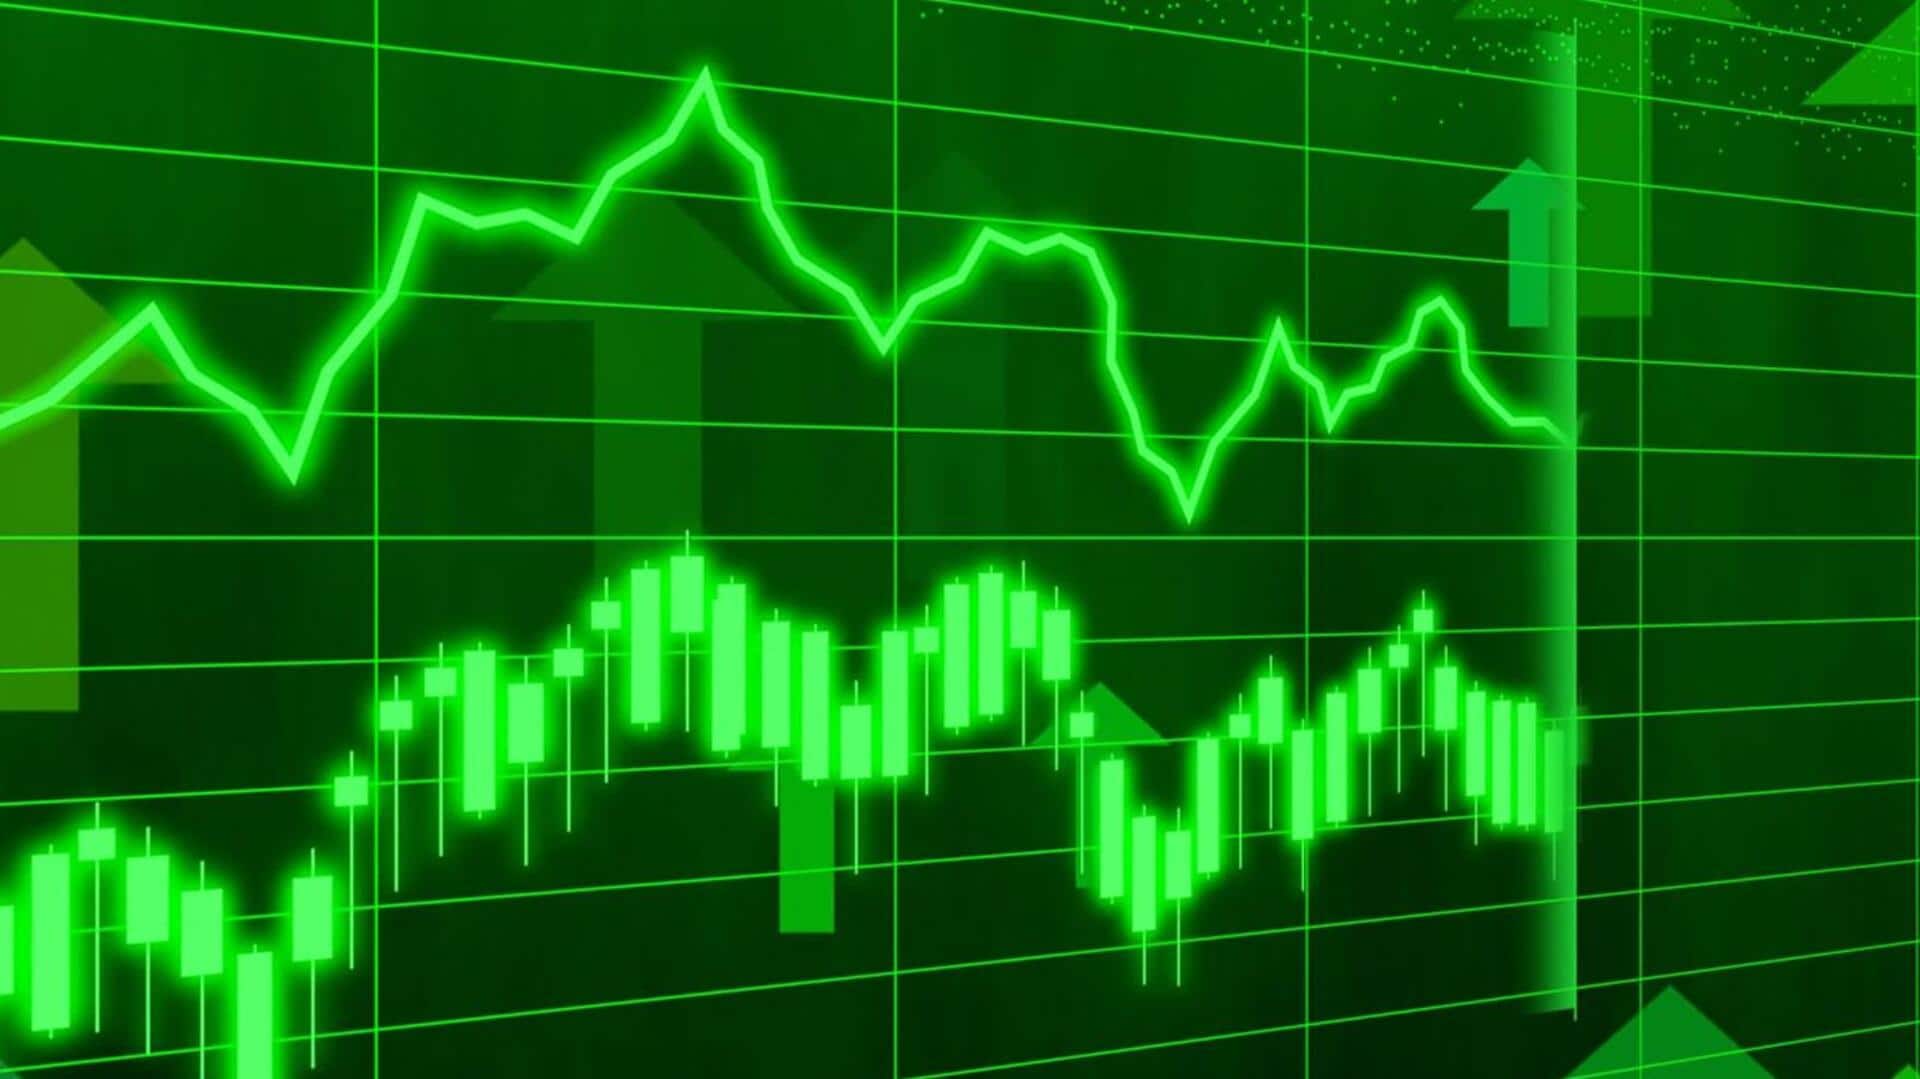 शेयर बाजार: सेंसेक्स 75 अंक ऊपर चढ़ा, निफ्टी में भी दर्ज हुई बढ़त